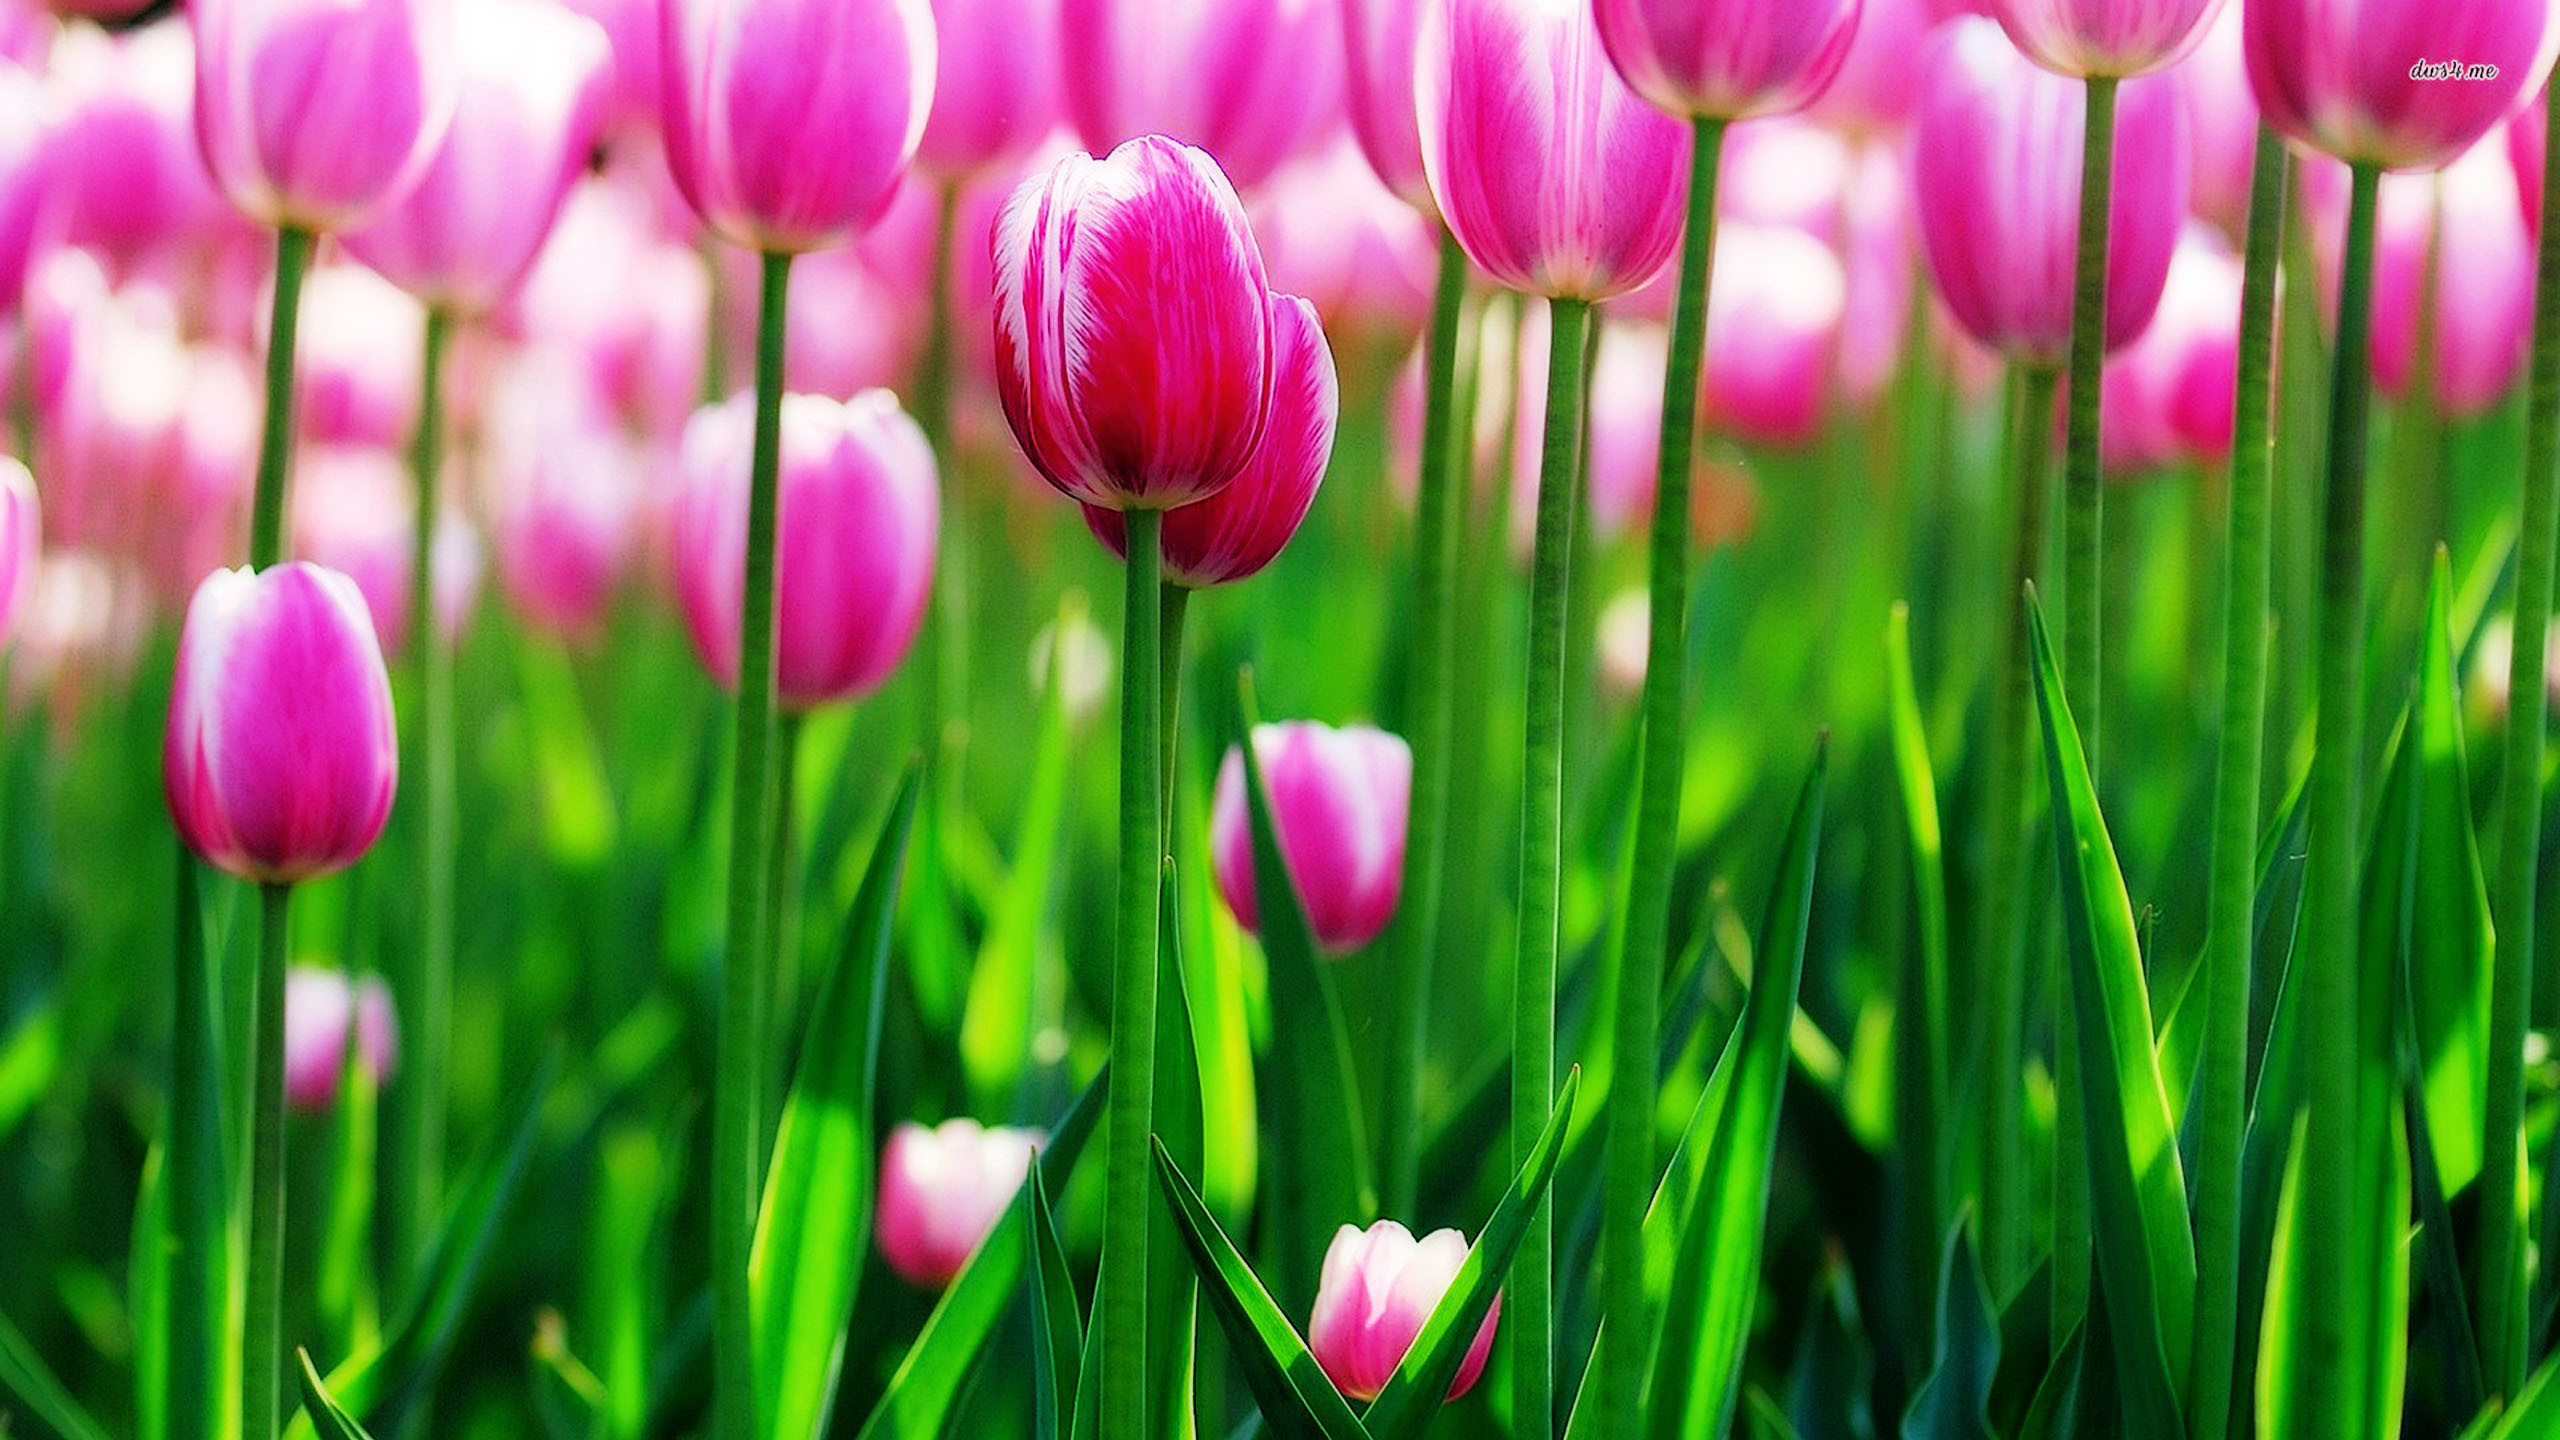 2560x1440 Tulip flower wallpaper for mobile | HD Wallpapers | Pinterest | Wallpaper  and Hd wallpaper